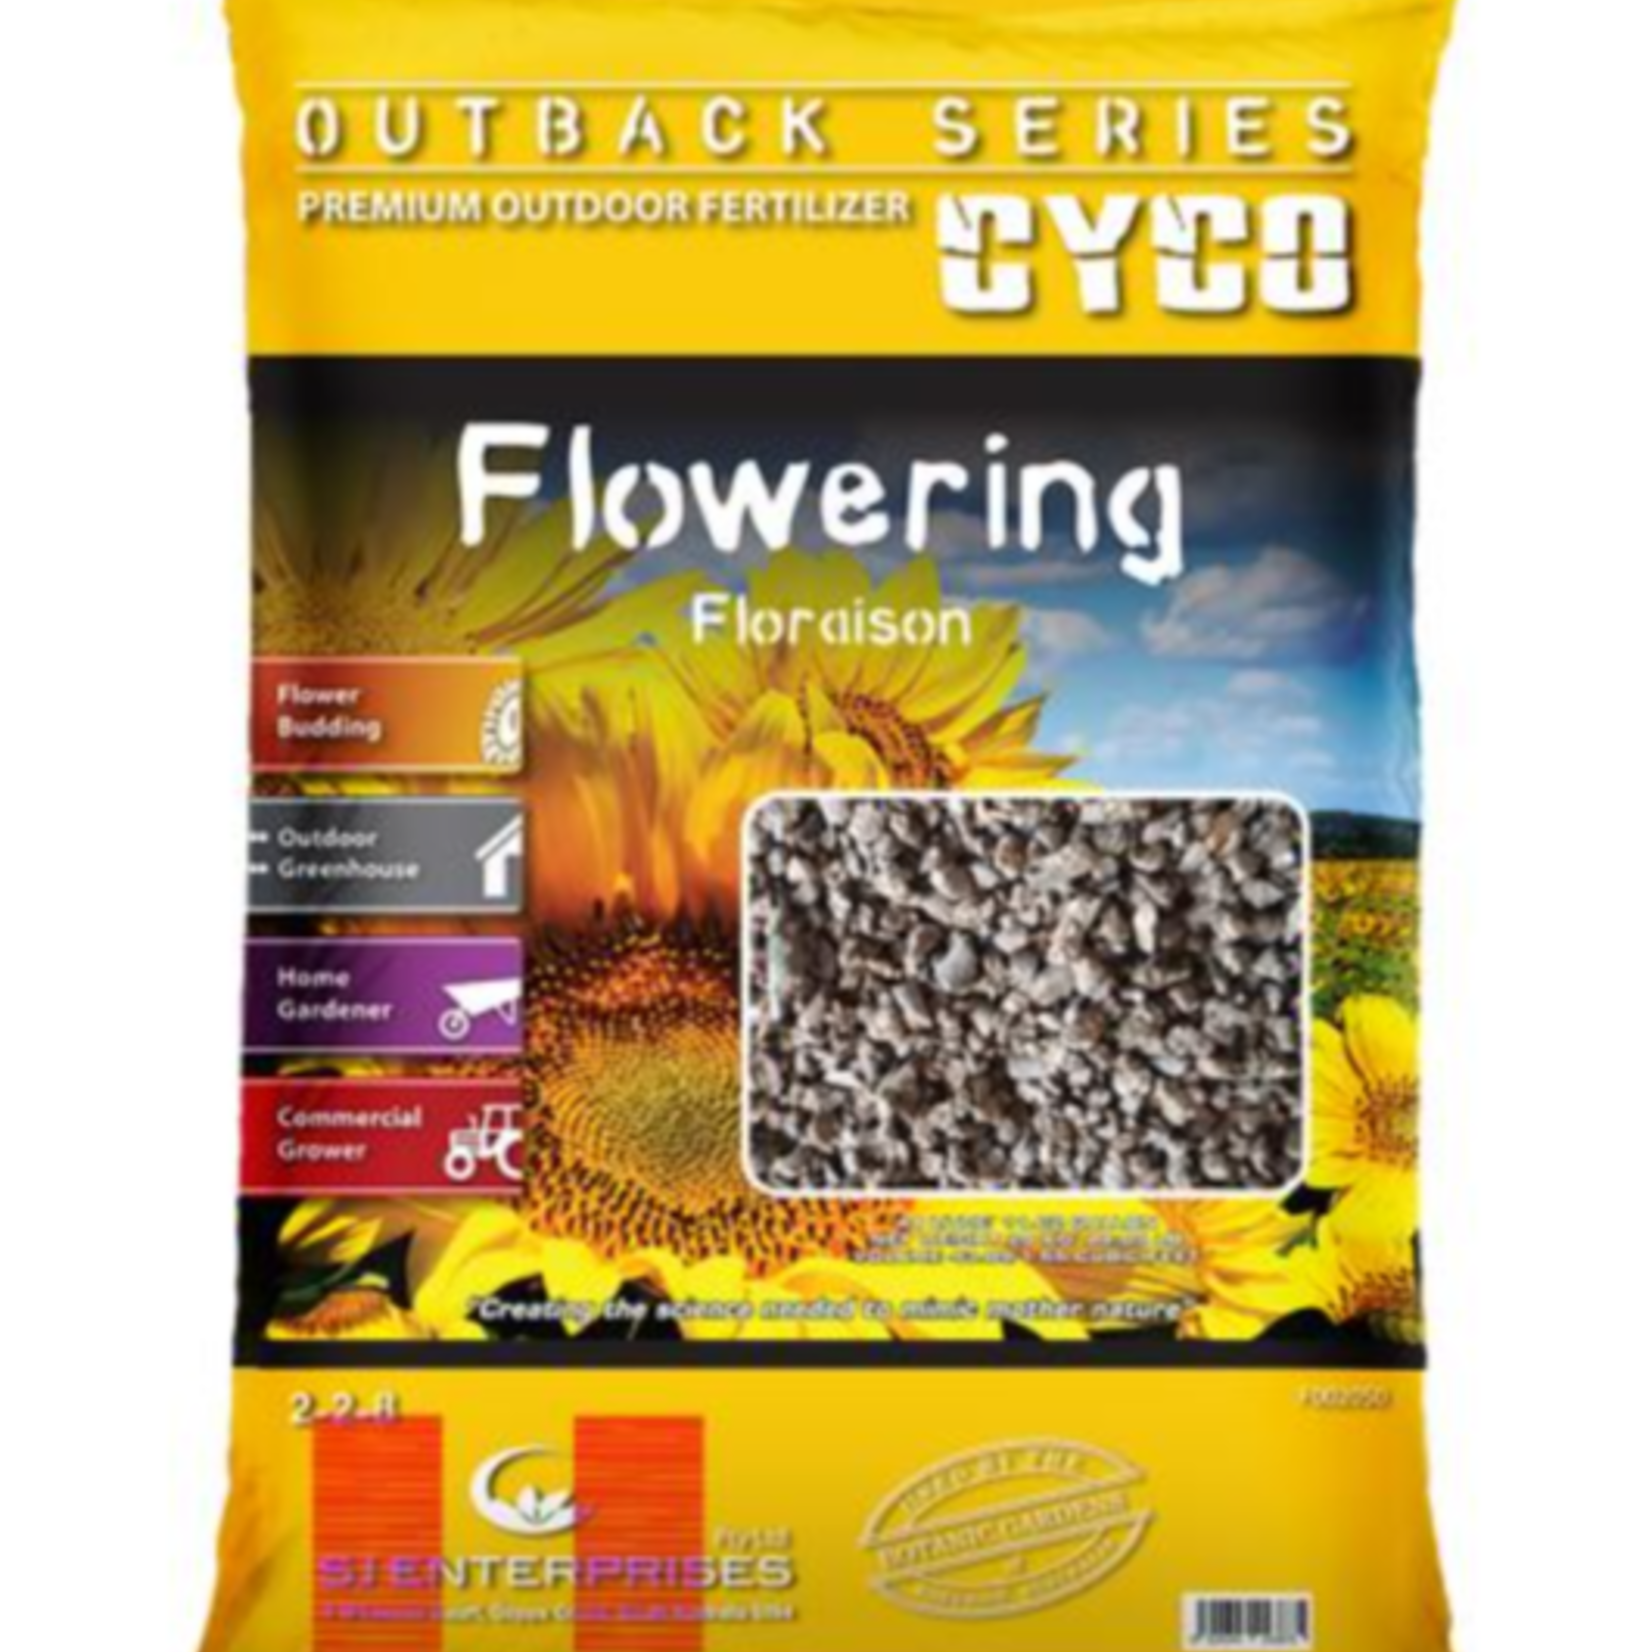 CYCO CYCO Outback Series Flowering 10kg/22 lb